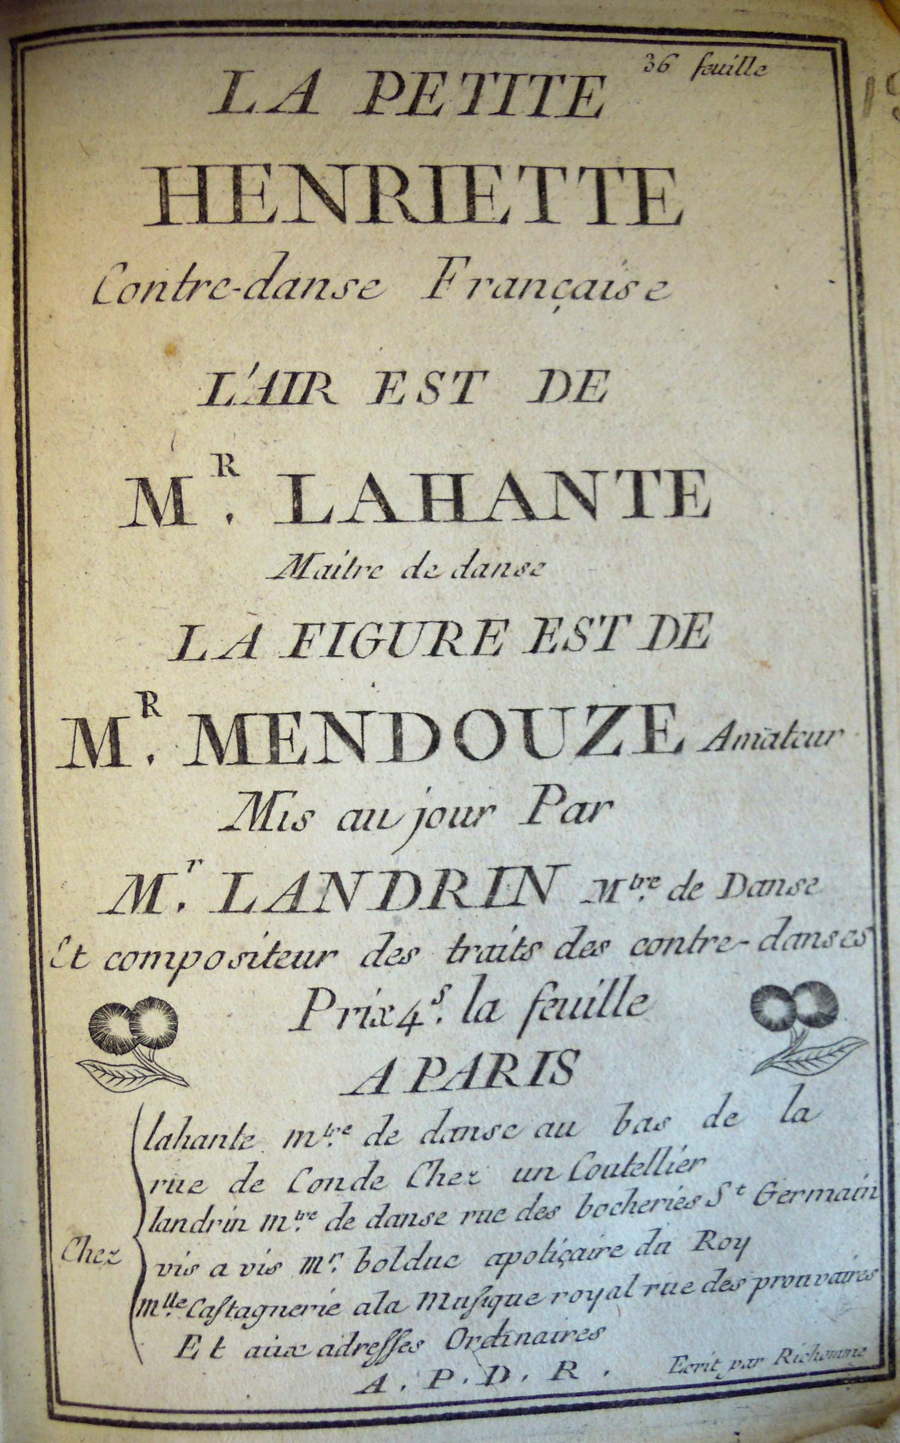 La Petite Henriette : page de titre portant le nom de la contredanse © Médiathèque du CND